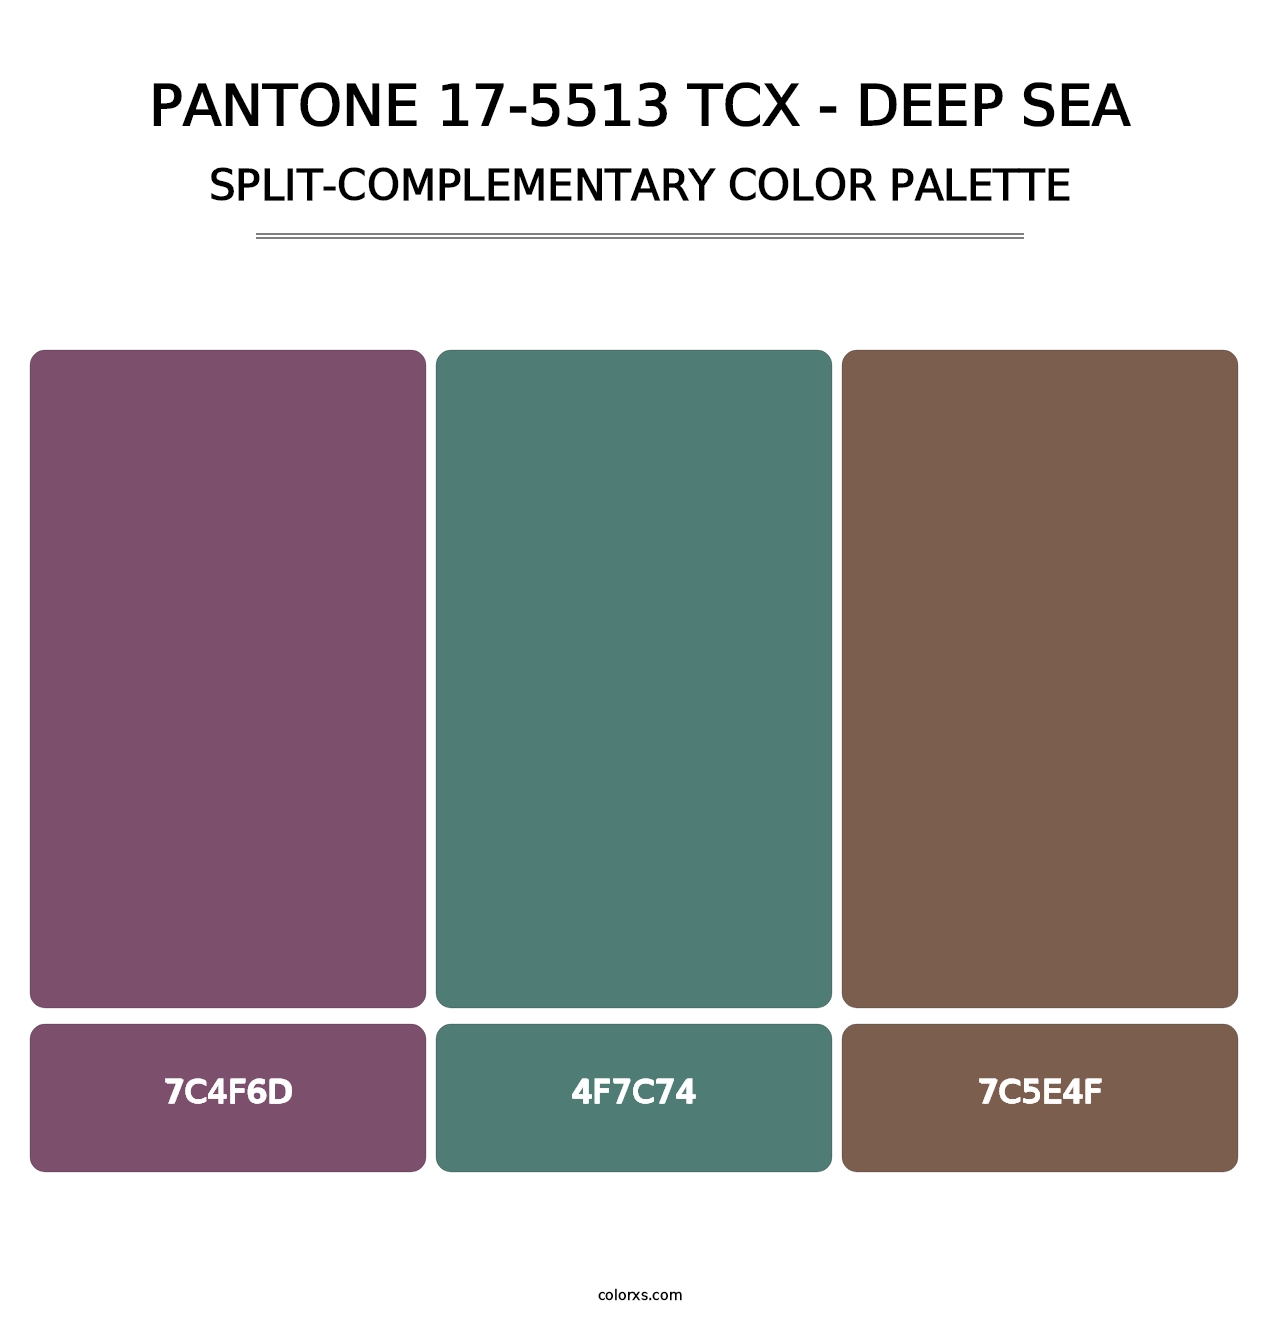 PANTONE 17-5513 TCX - Deep Sea - Split-Complementary Color Palette